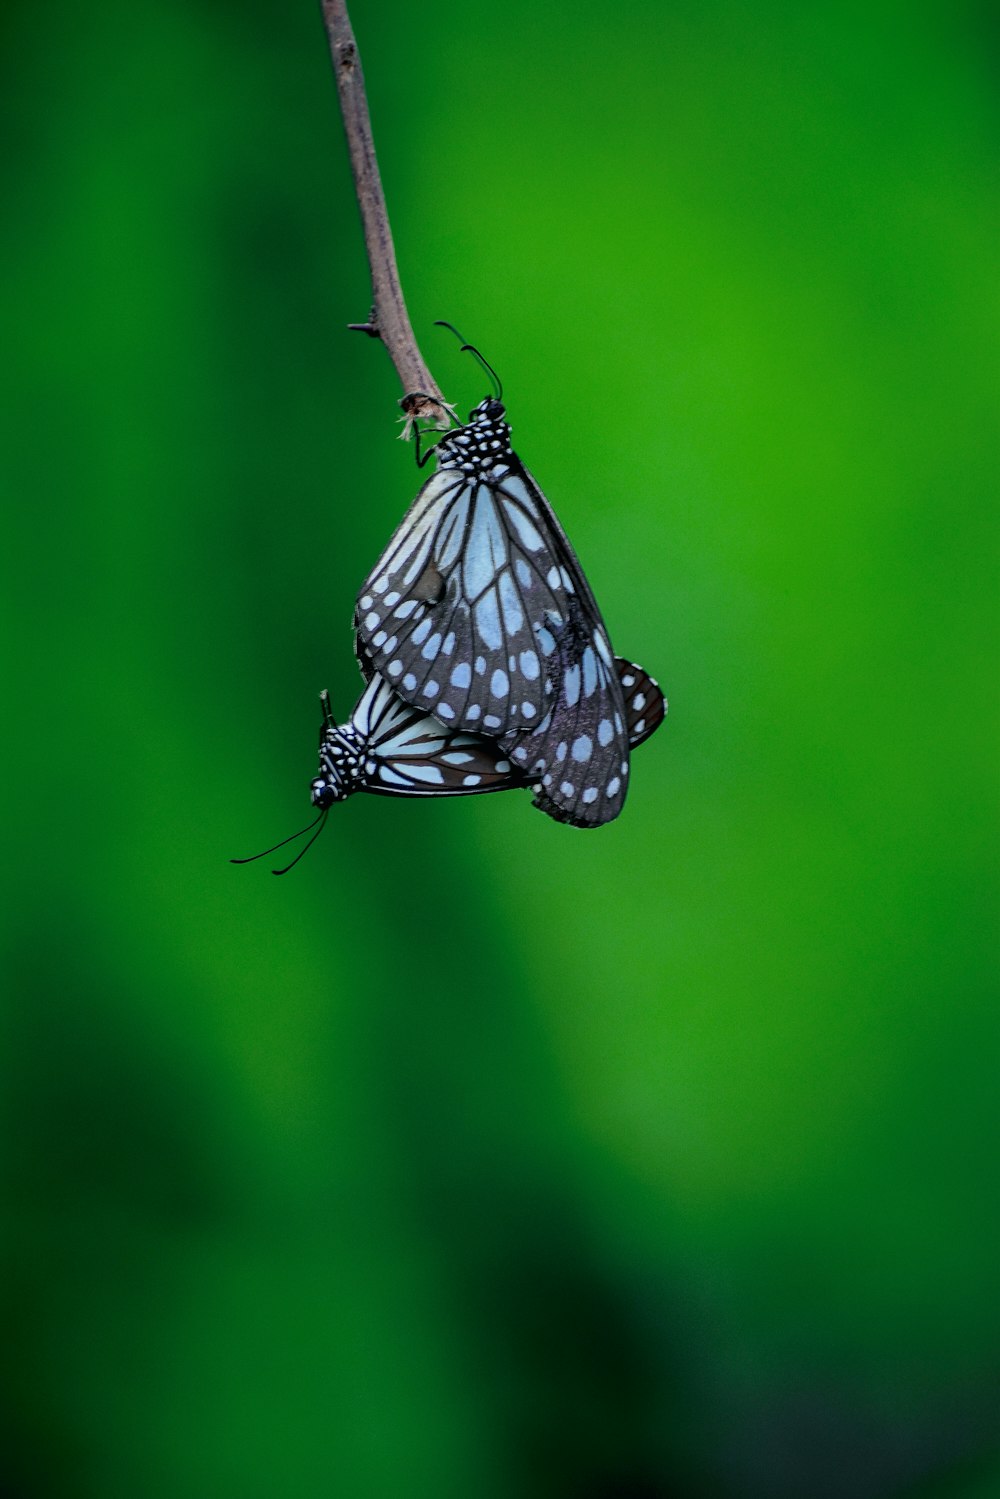 mariposa blanca y negra posada en el tallo marrón en la fotografía de primer plano durante el día